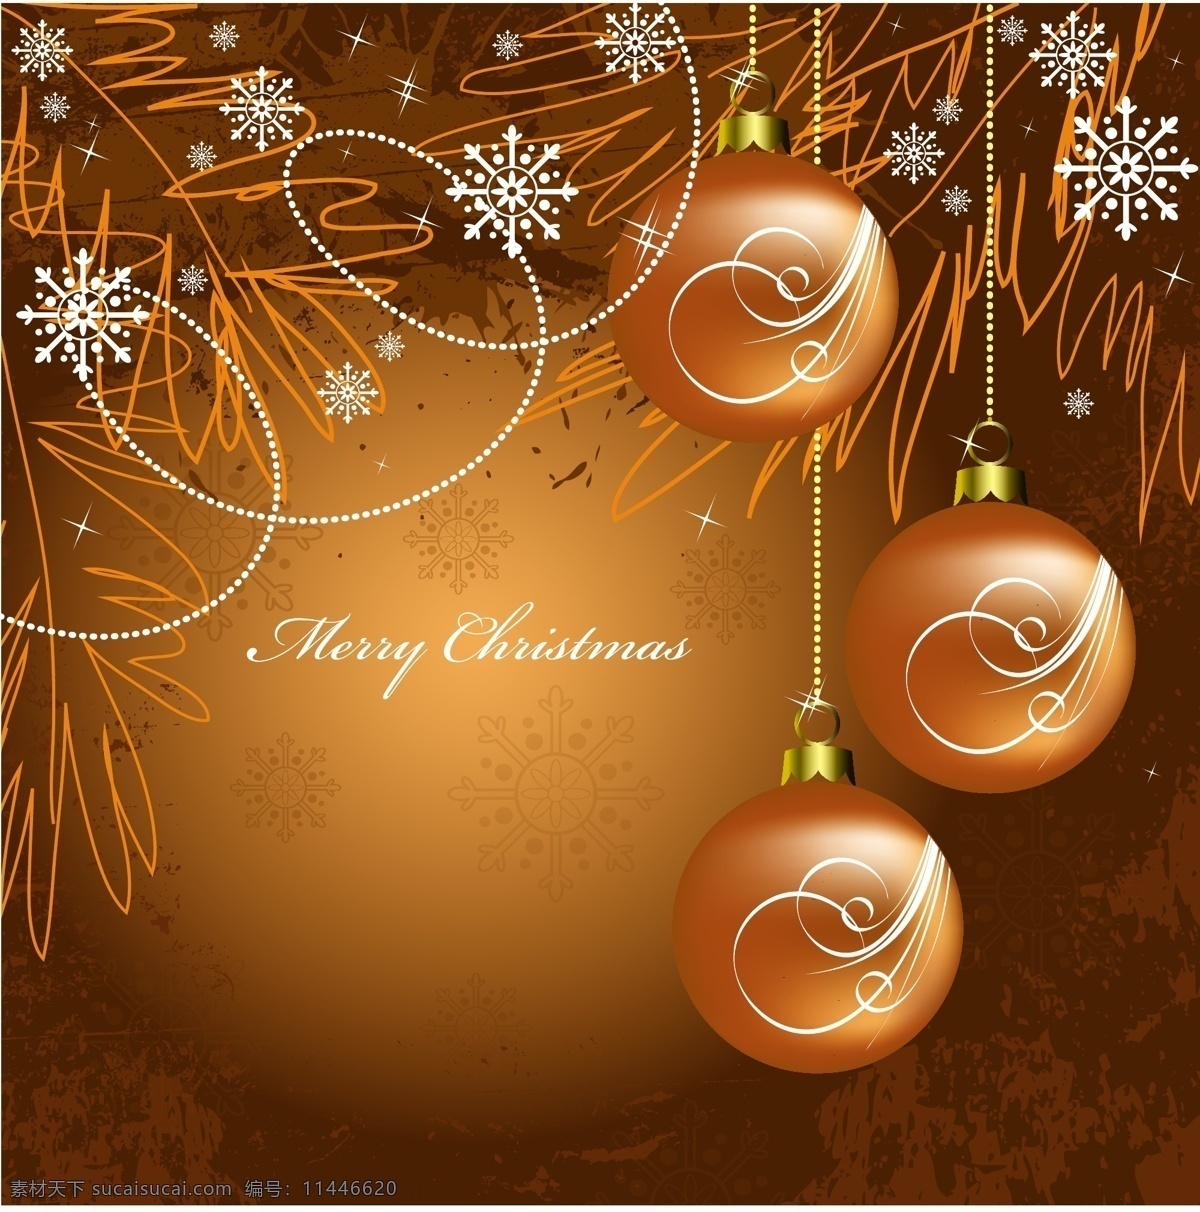 圣诞 吊球 背景 矢量 装饰 彩球 菱形 雪花 蝴蝶结 圣诞节 节日素材 其他节日